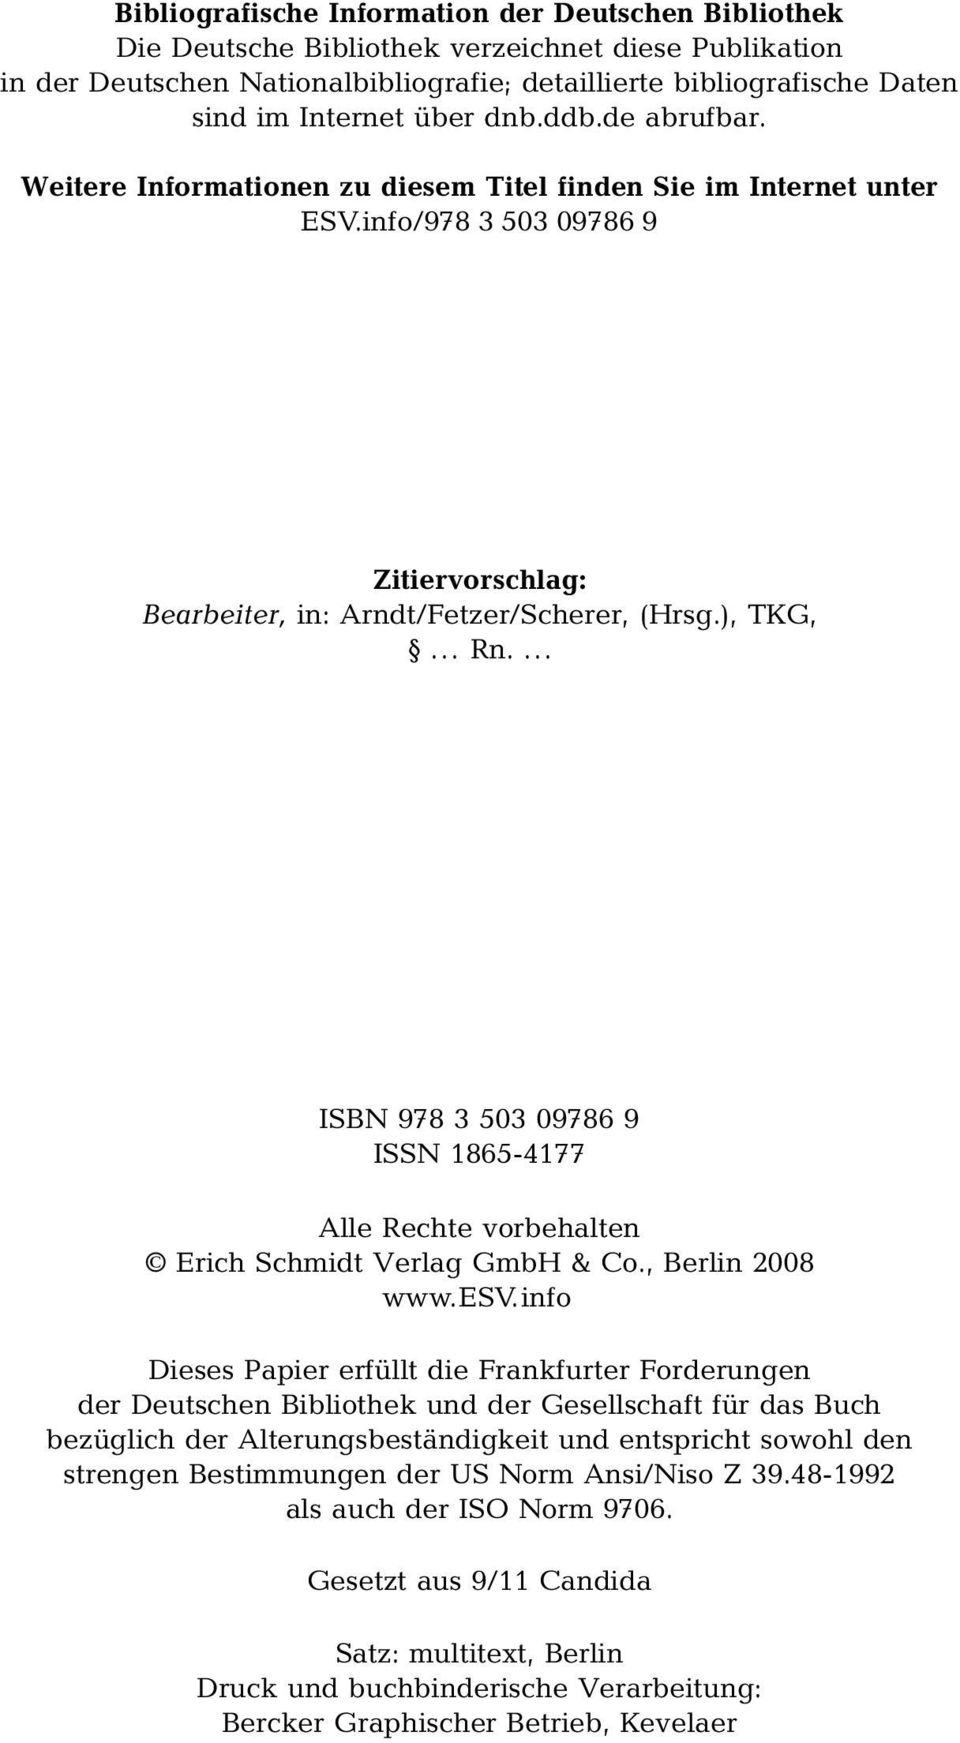 ... ISBN 978 3 503 09786 9 ISSN 1865-4177 Alle Rechte vorbehalten Erich Schmidt Verlag GmbH & Co., Berlin 2008 www.esv.